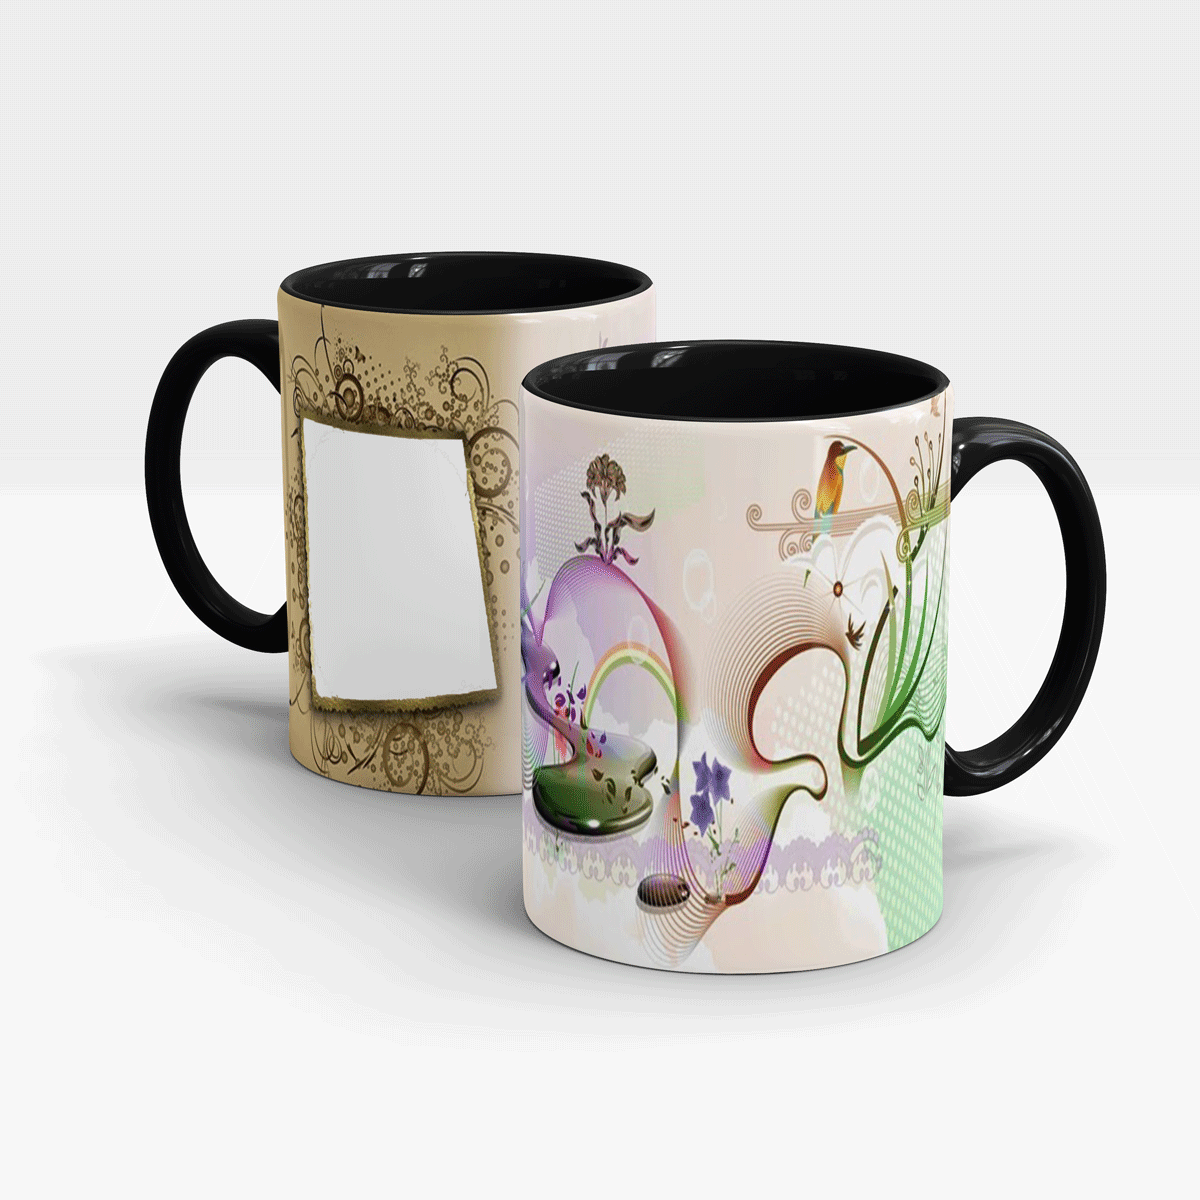  Custom  Printed Beautiful Mug  Design Your Own Online 